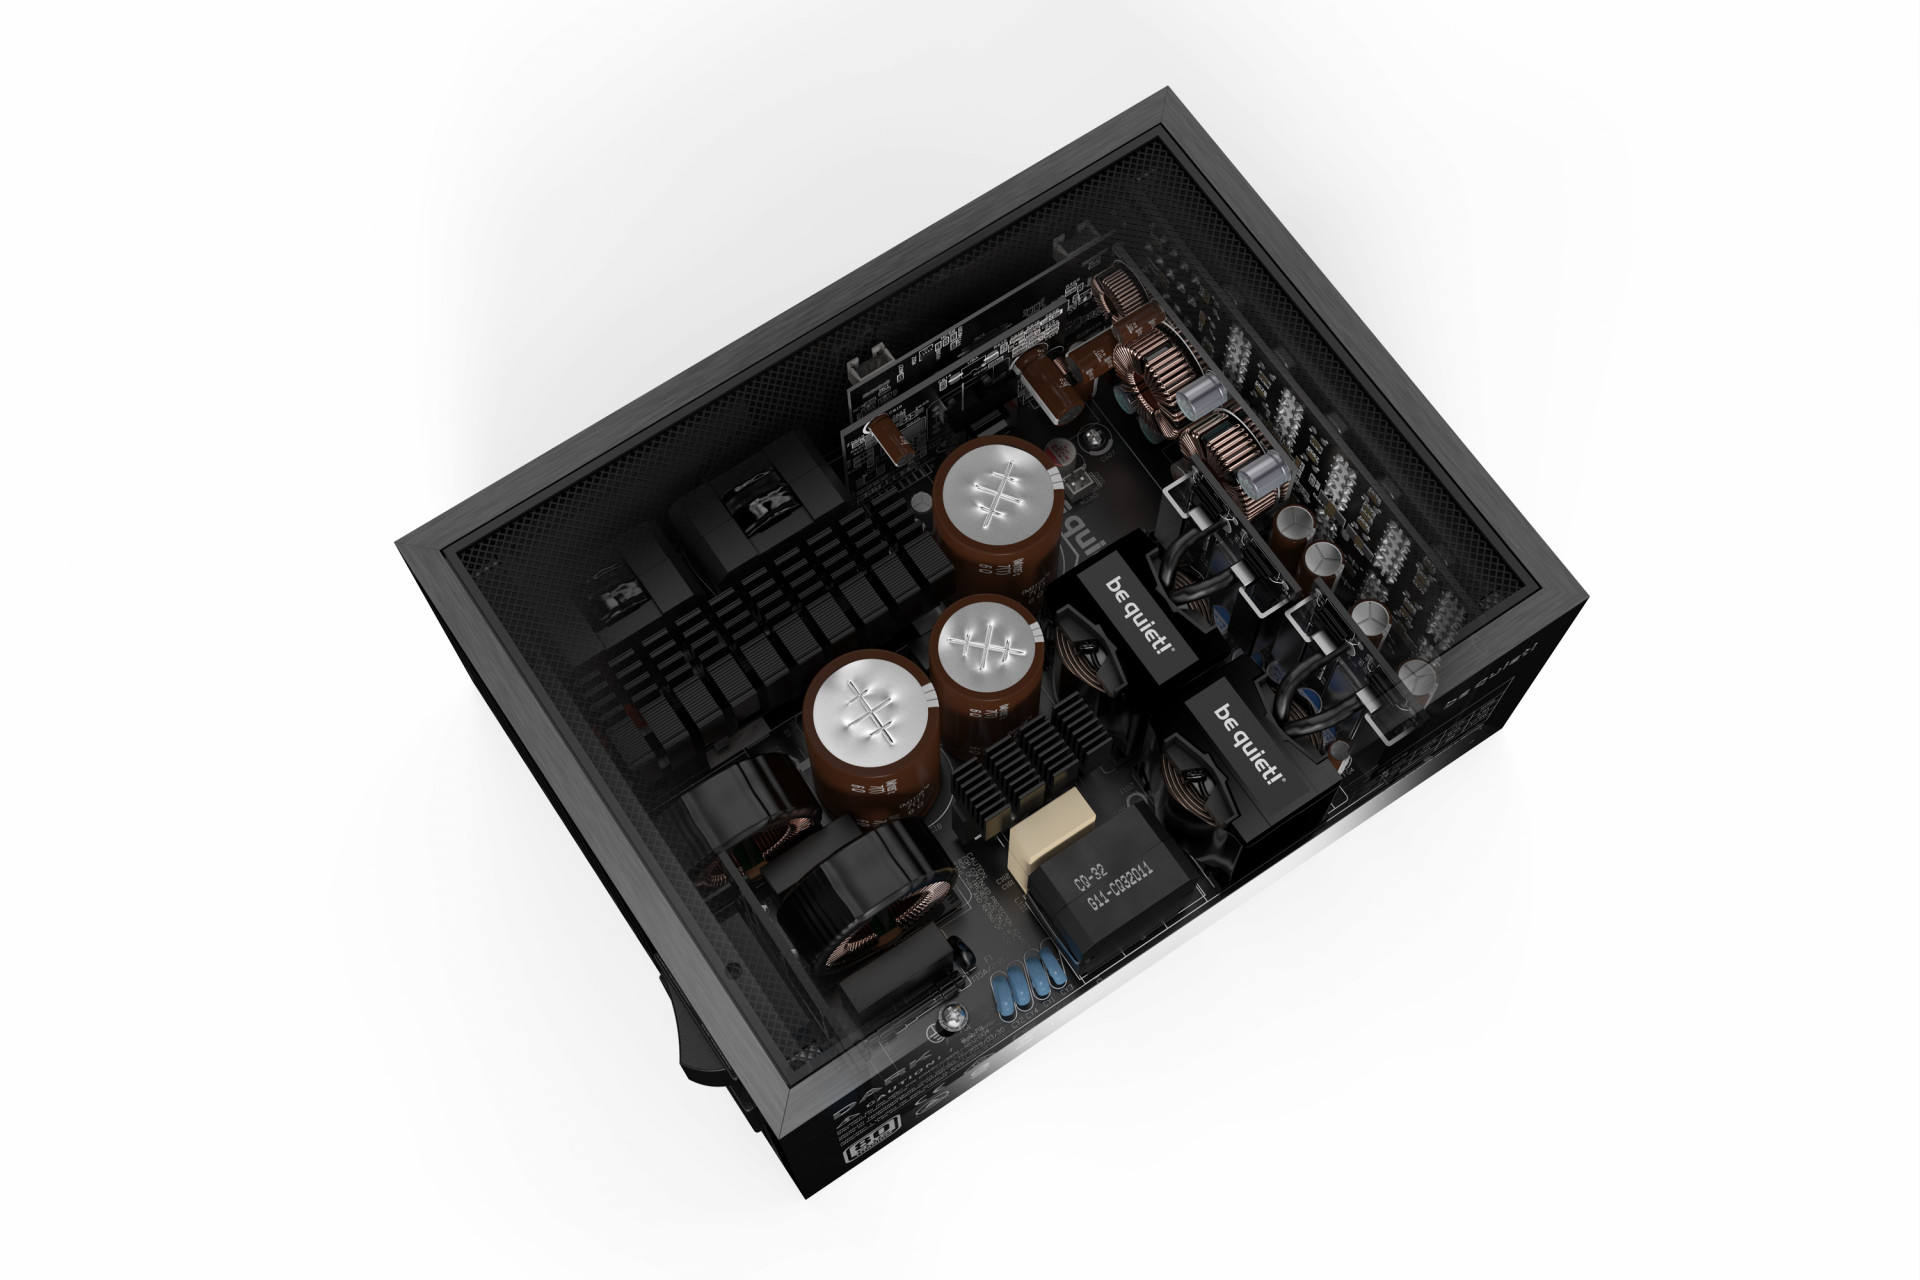 be quiet! Dark Power Pro 13: полностью цифровой ATX 3.0 блок питания с невероятной производительностью и стабильностью